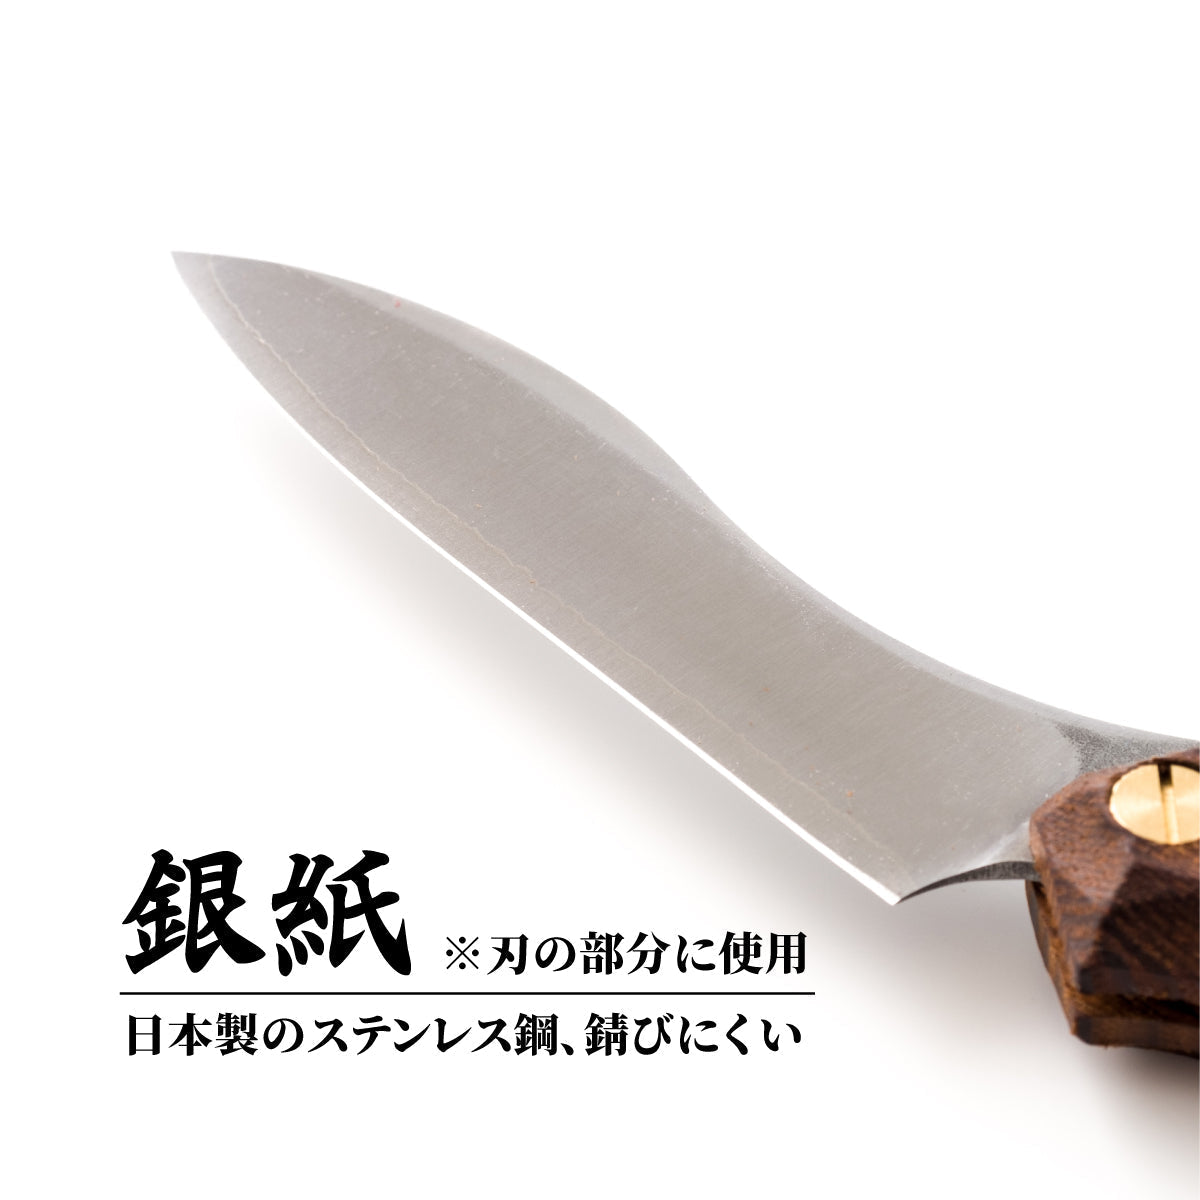 折畳式料理ナイフSolo 名栗ブラック (ステンレス鋼/銀紙三号)9,900円